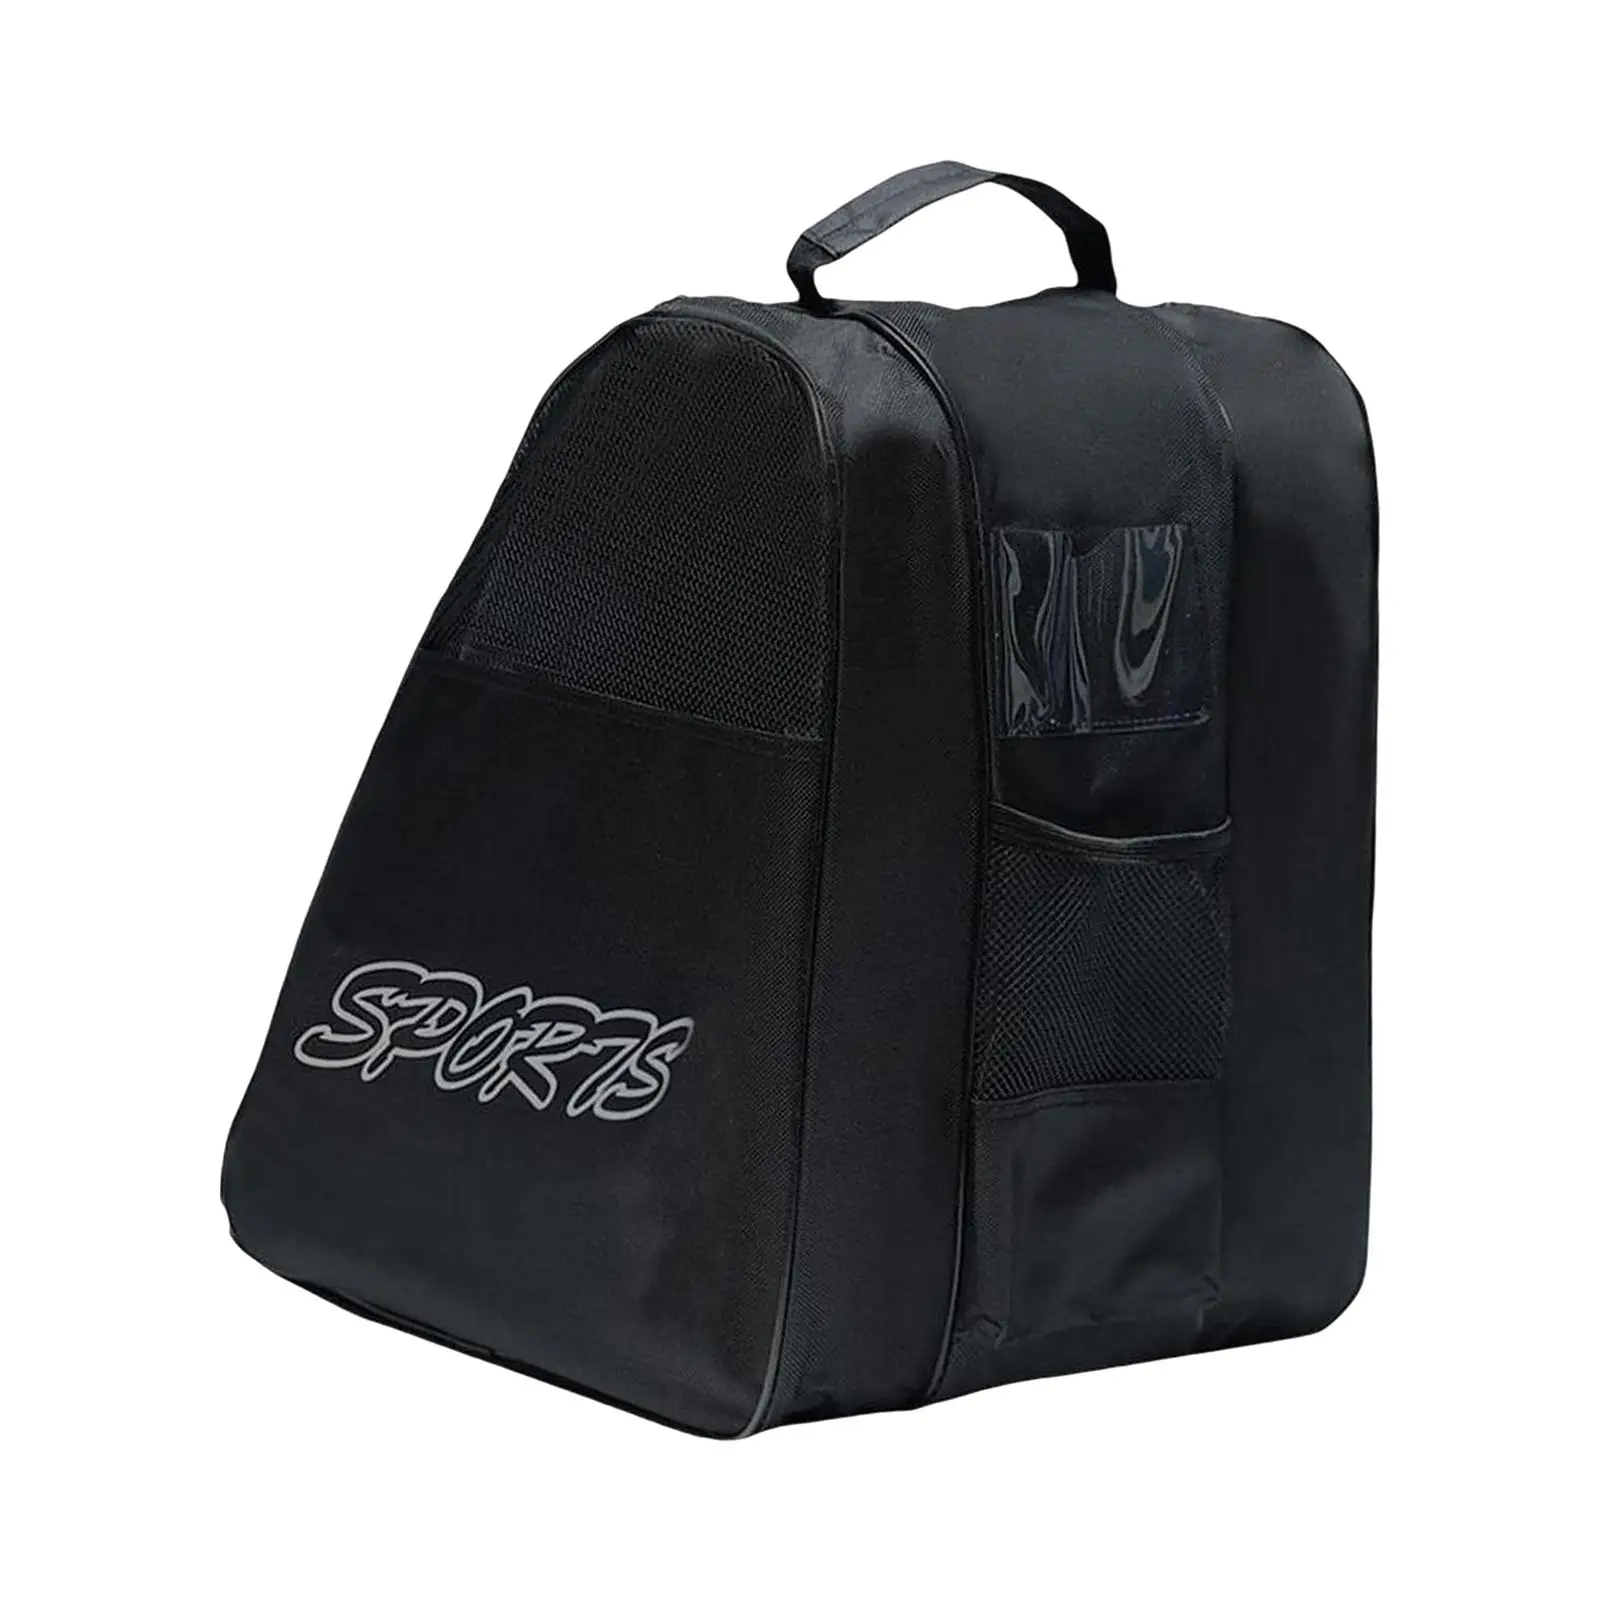 Roller Skating Bag Skate Accessories Portable Adjustable Shoulder Strap Breathable Women Men Skating Shoes Bag Ice Skate Bag